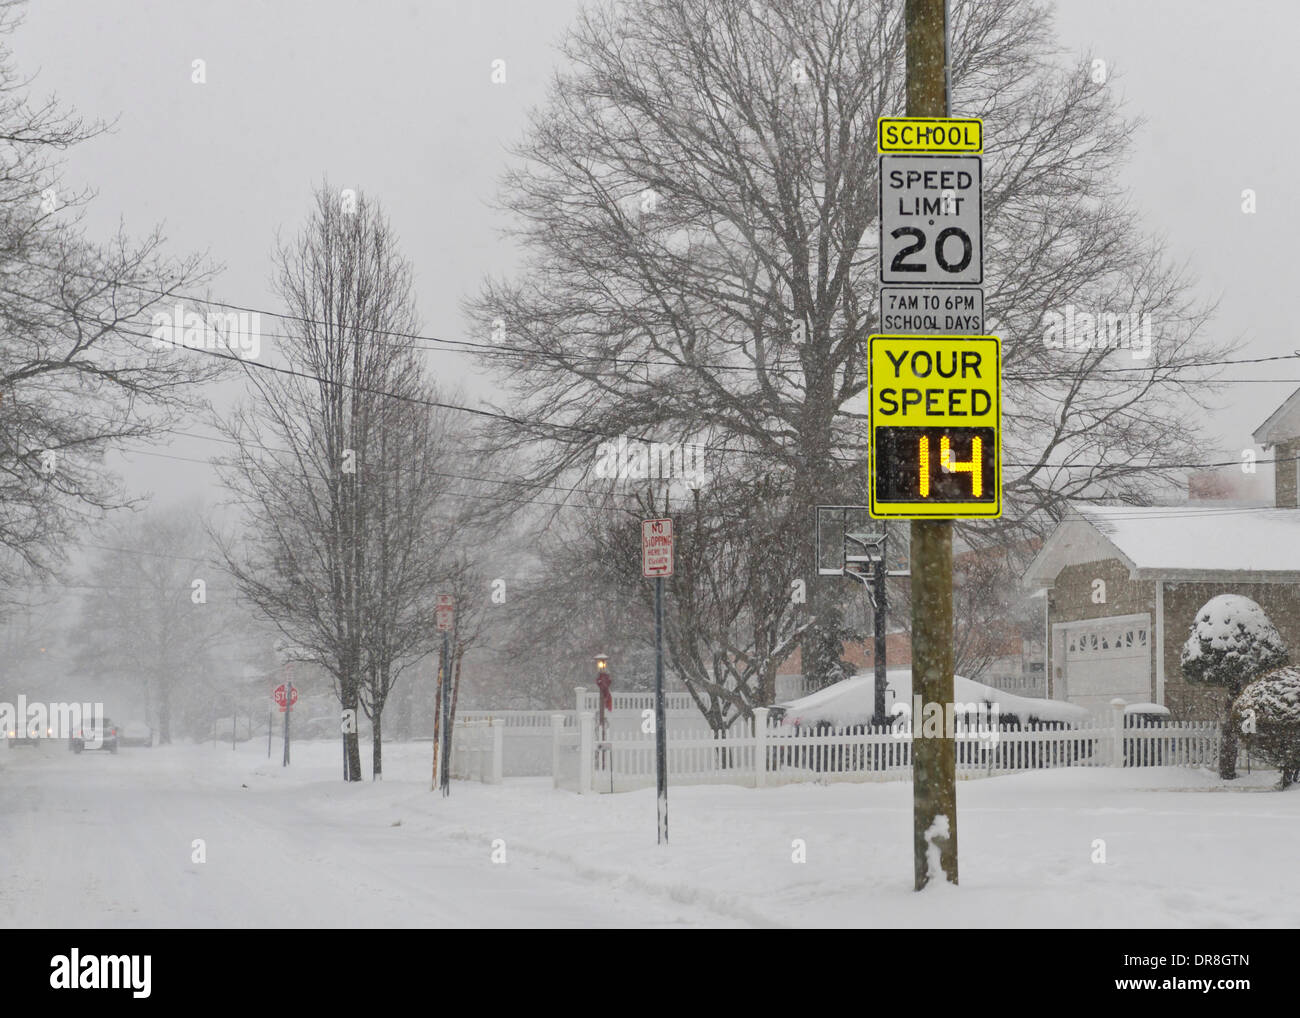 Merrick, New York, États-Unis, 21 janvier 2014. Une connexion électrique indique qu'une voiture va 14 mph, ce qui est bien en deçà de la limite de vitesse de 20 kilomètres, comme la neige tombe lourdement sur Long Island en raison de la tempête de neige, avec jusqu'à 10 pouces de neige prévue. Détermine automatiquement le radar de vitesse les voitures venant pendant les heures de cours dans cette zone scolaire. Credit : Ann E Parry/Alamy Live News Banque D'Images